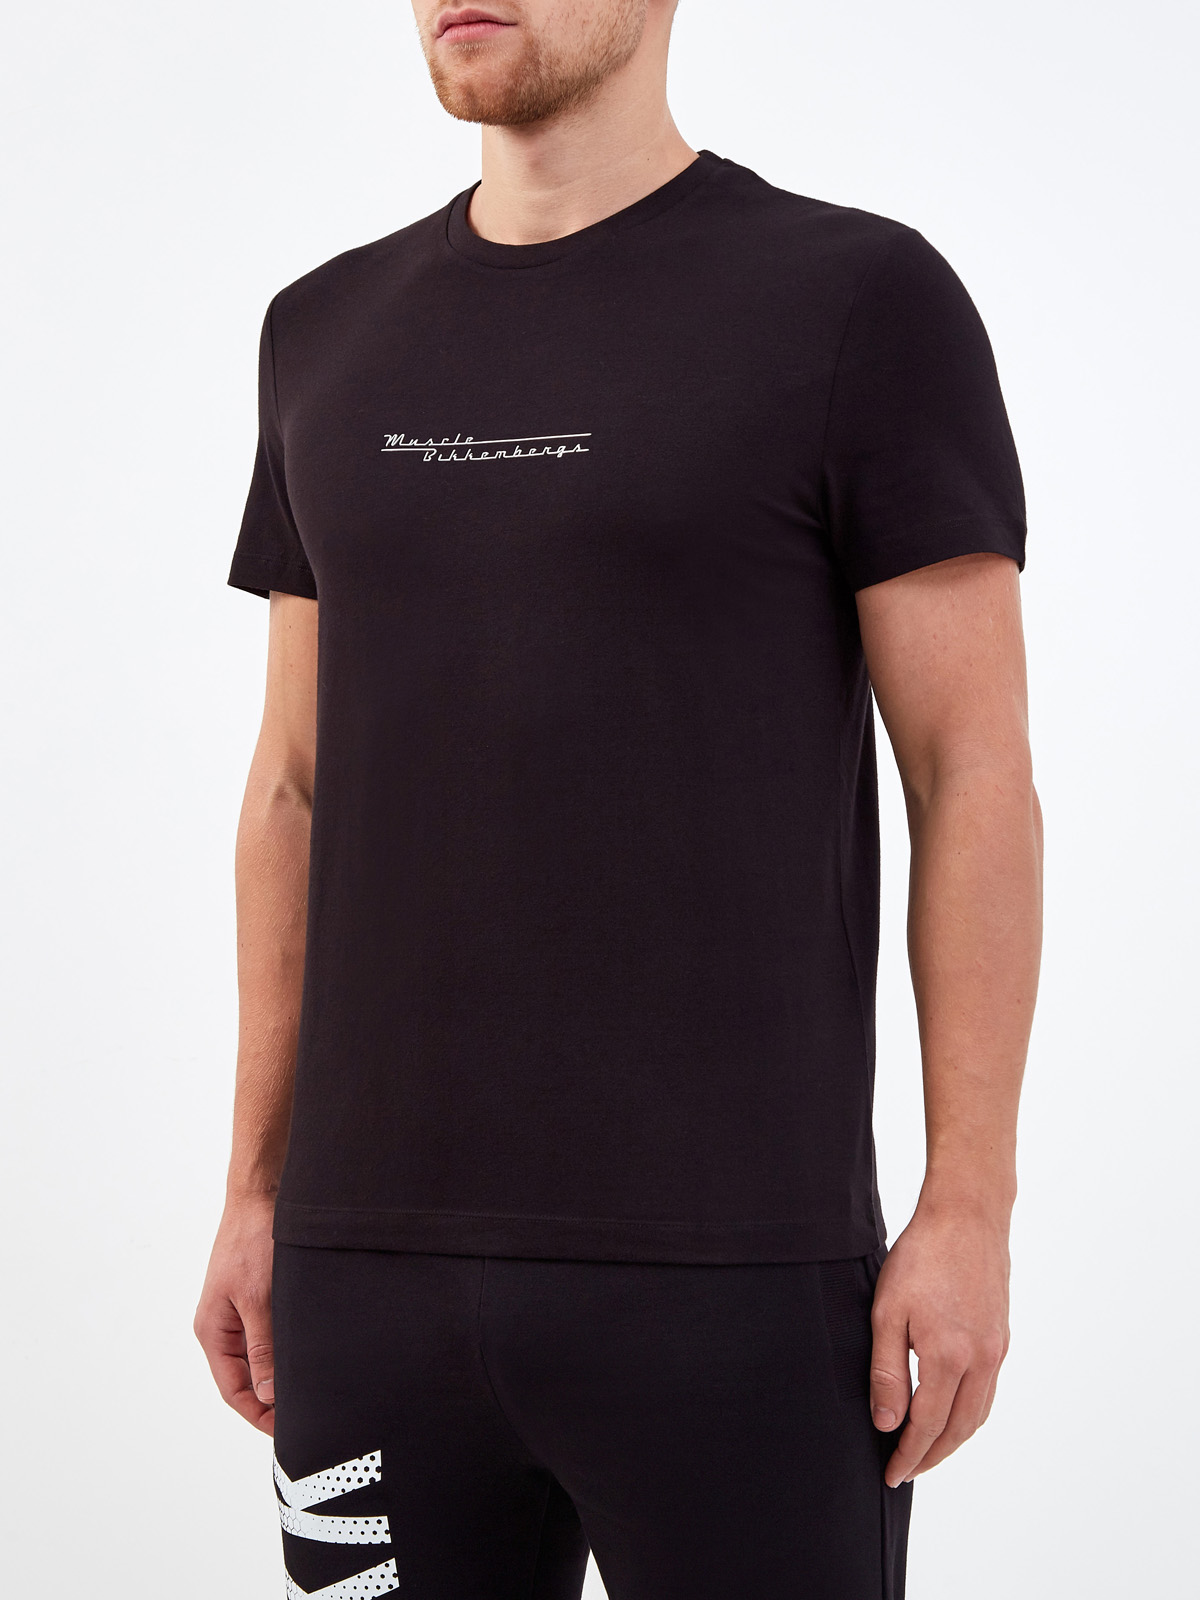 Хлопковая футболка с металлизированным логотипом и аппликацией BIKKEMBERGS, цвет черный, размер S;M;L;XL;2XL - фото 3